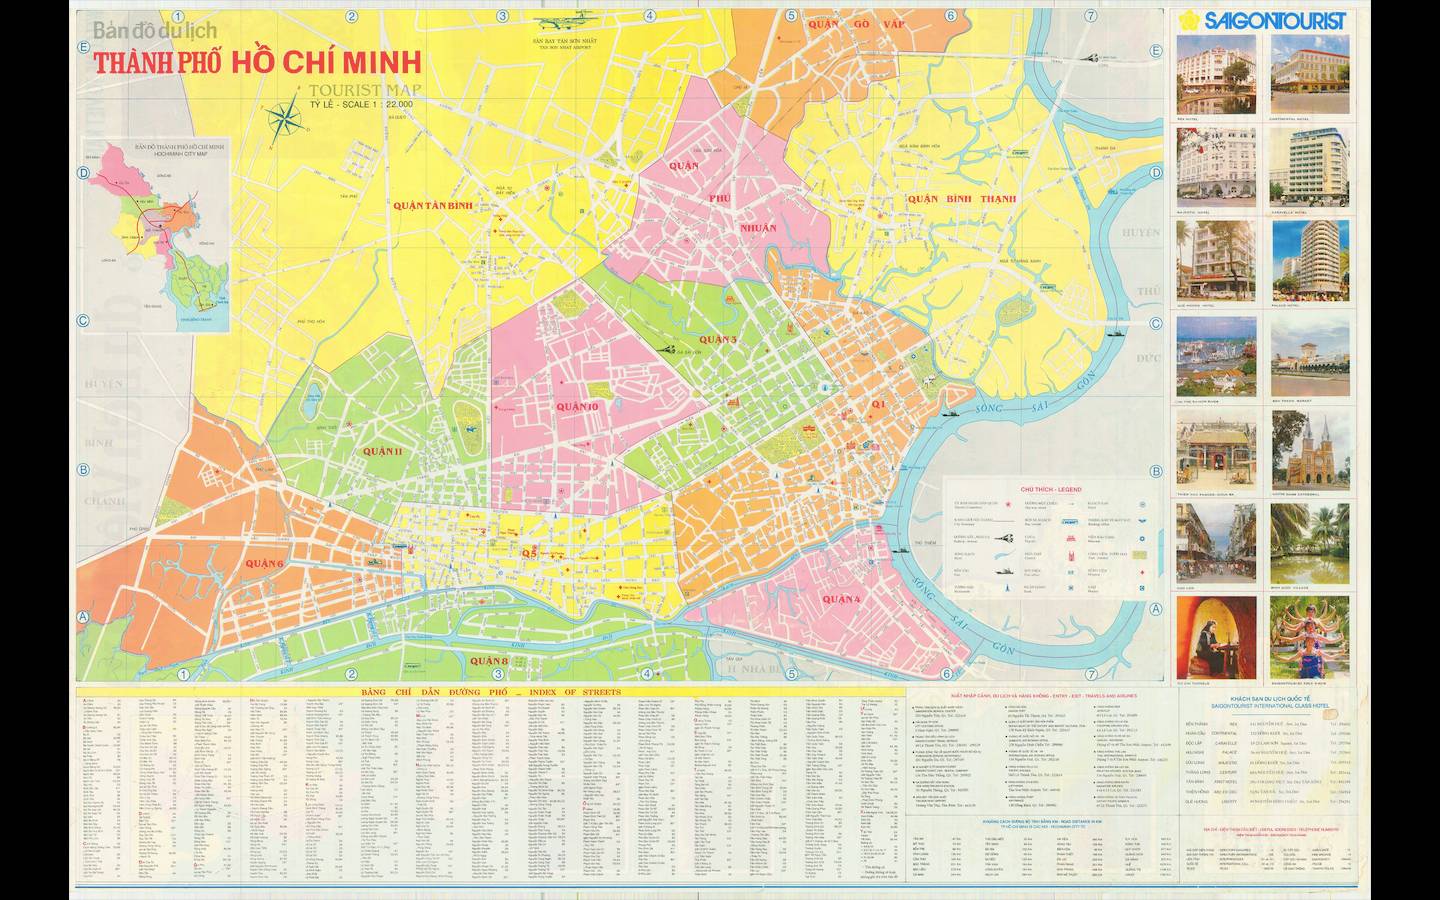 Bản đồ TP HCM năm 2024: Năm 2024, TP HCM sẽ có bản đồ mới nhất, được cập nhật với toàn bộ thông tin địa lý và công trình mới, giúp người dân và du khách dễ dàng tìm được địa điểm và đường đi tốt nhất trong thành phố.